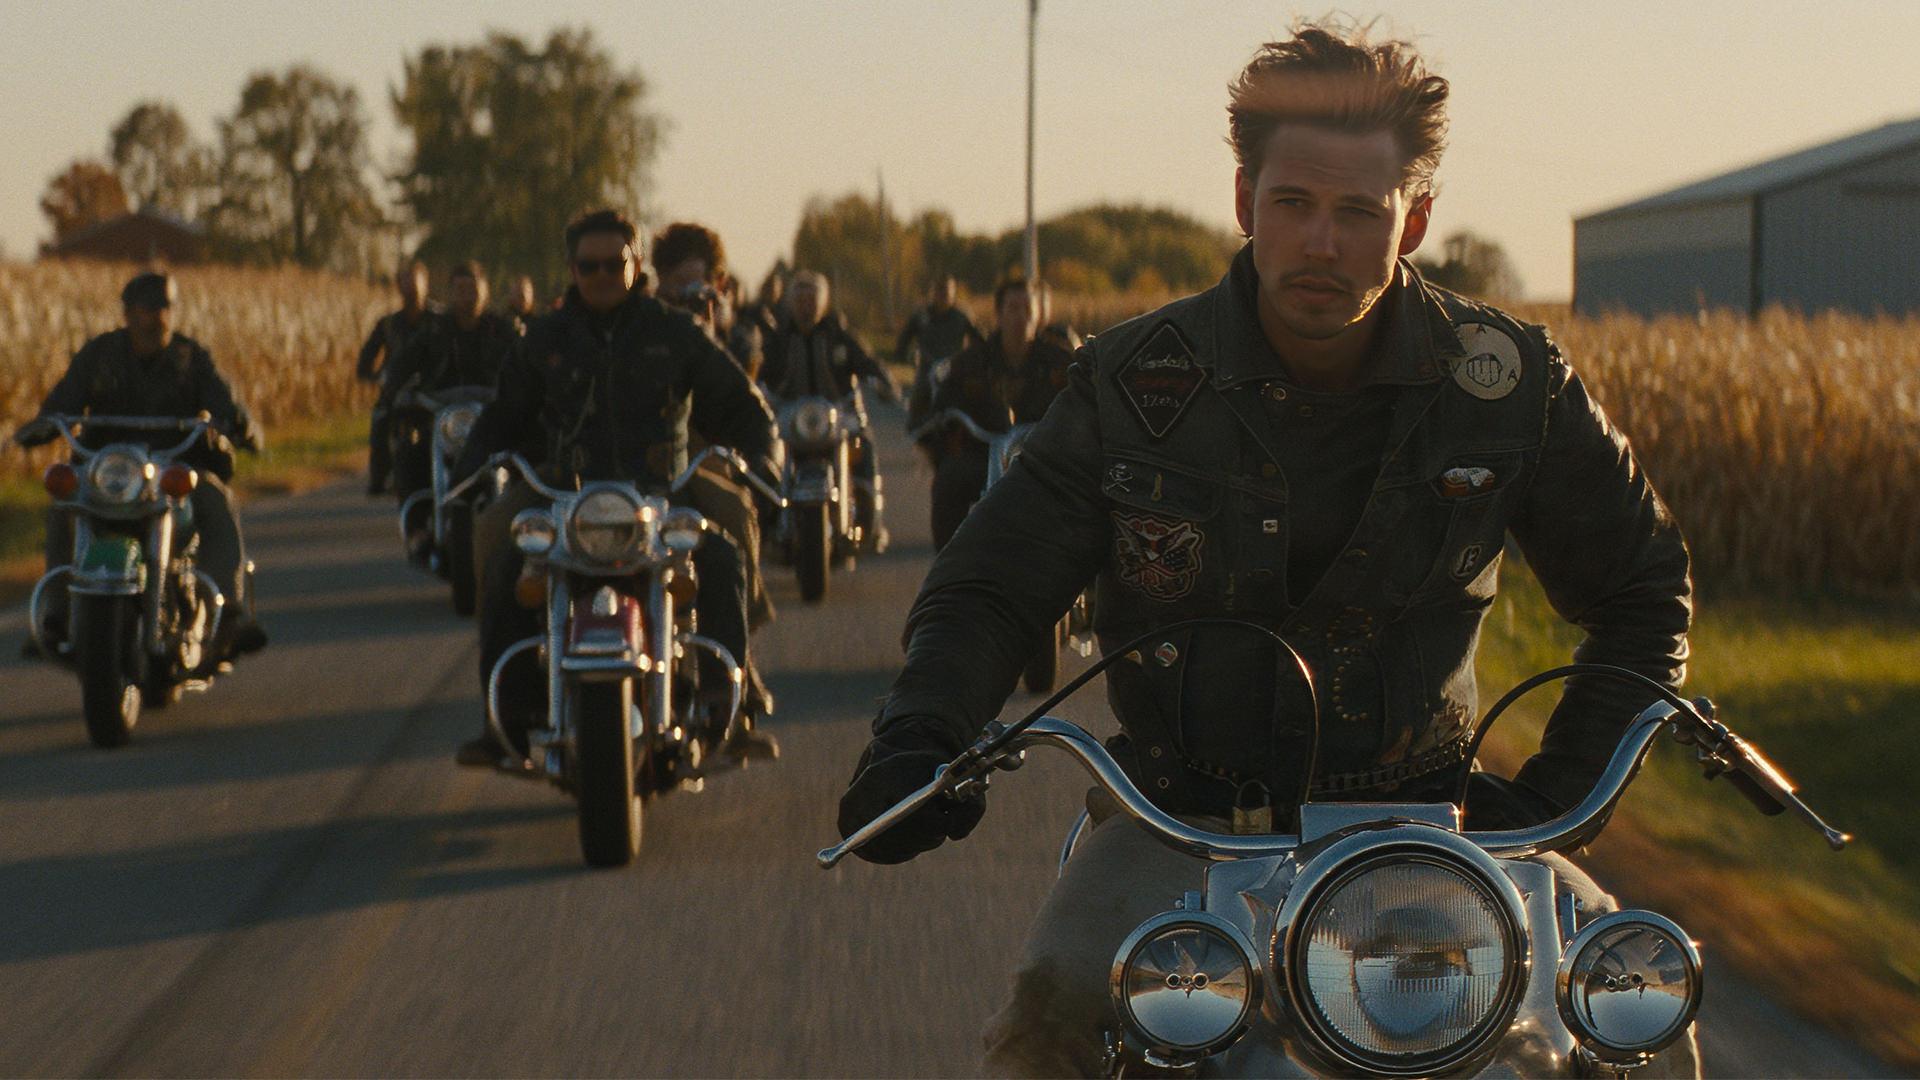 موتورسواری آسیتن باتلر در فیلم The Bikeriders 